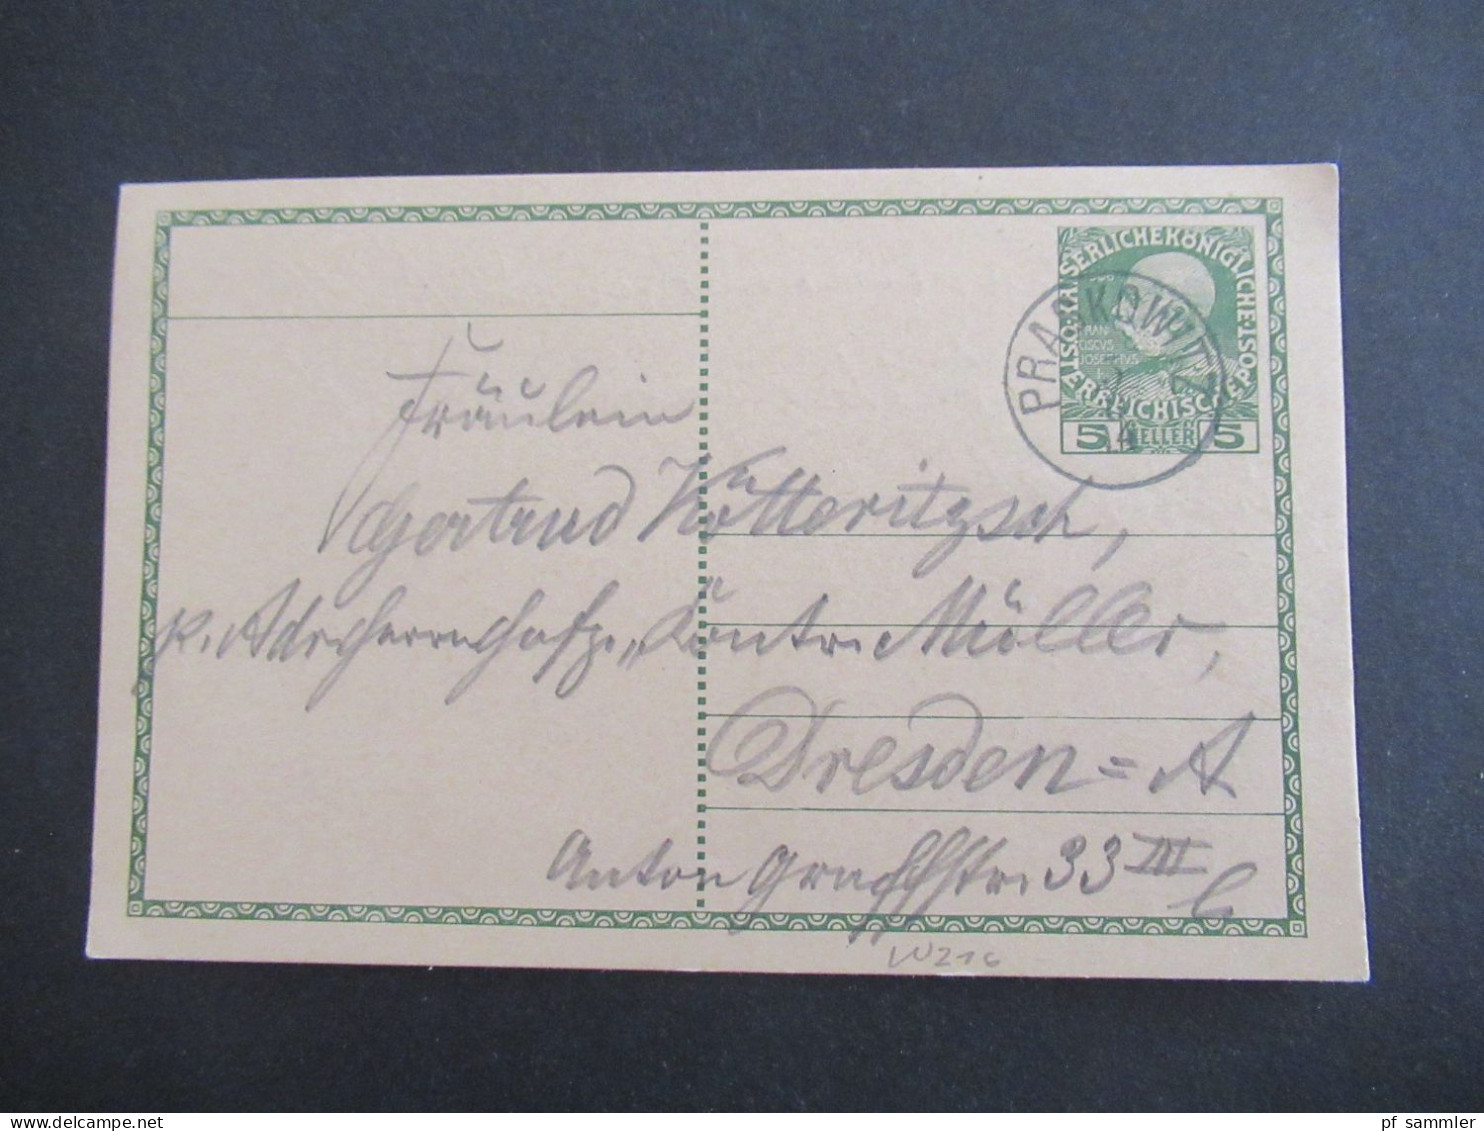 1914 Österreich / Tschechien GAnzsache 5 Heller Stempel K1 Praskowitz Heute Prackovice Nad Labem Nach Dresden Gesendet - Cartes Postales